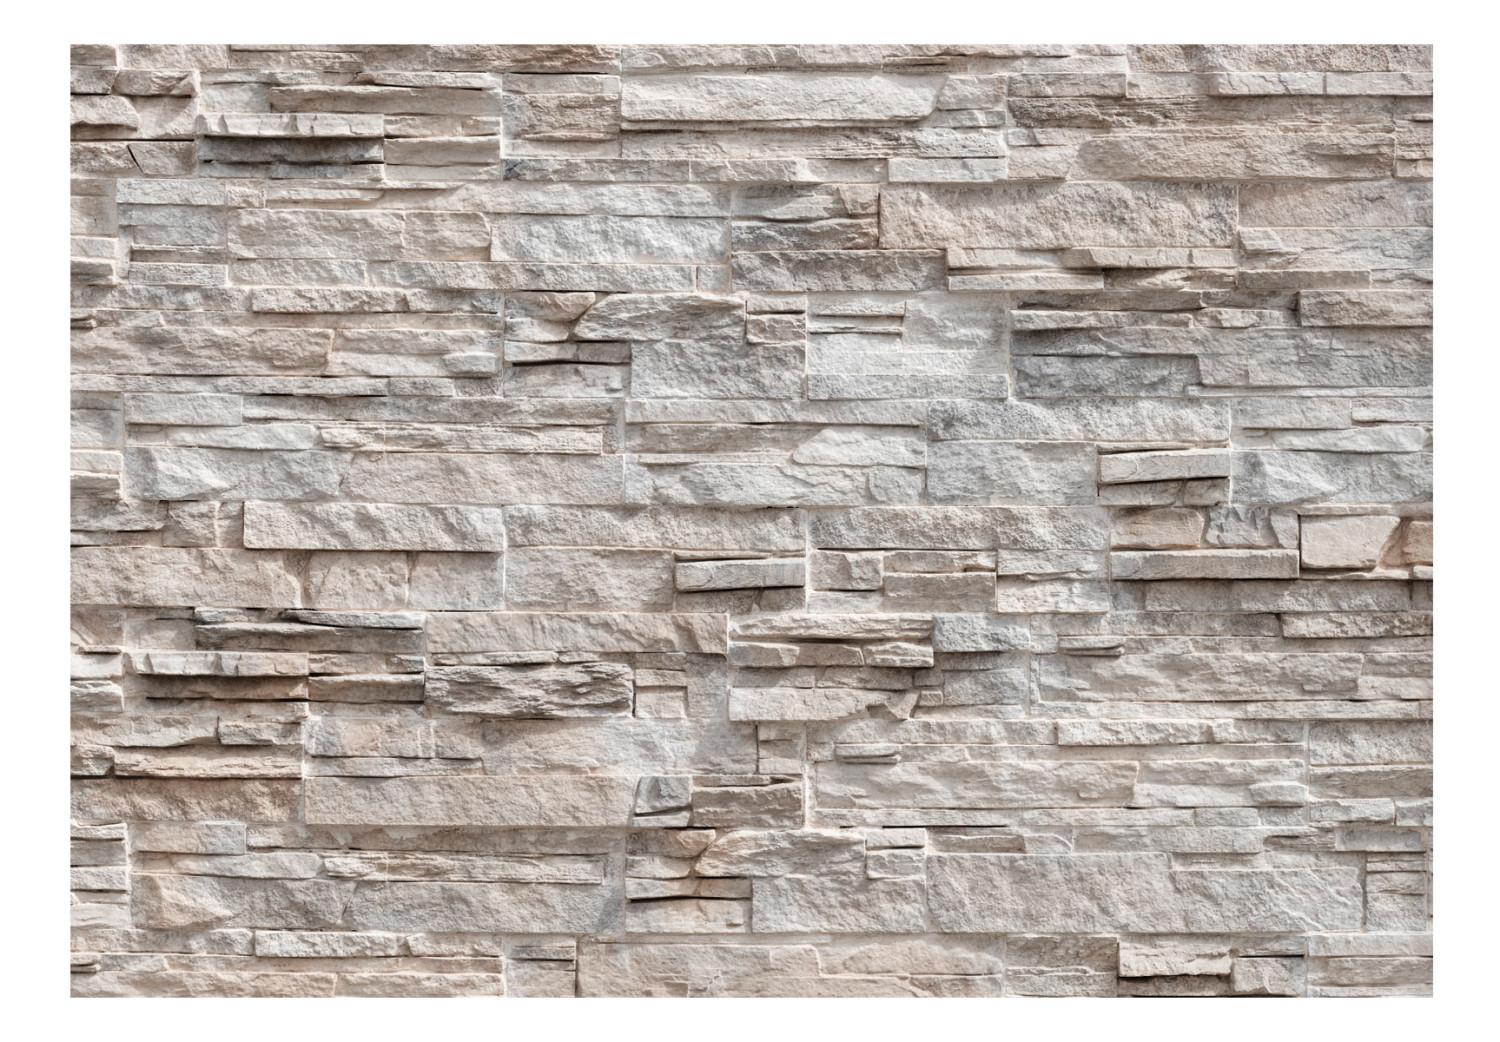 Fotomural a medida Maravilla - fondo beige con textura irregular de bloques de piedra